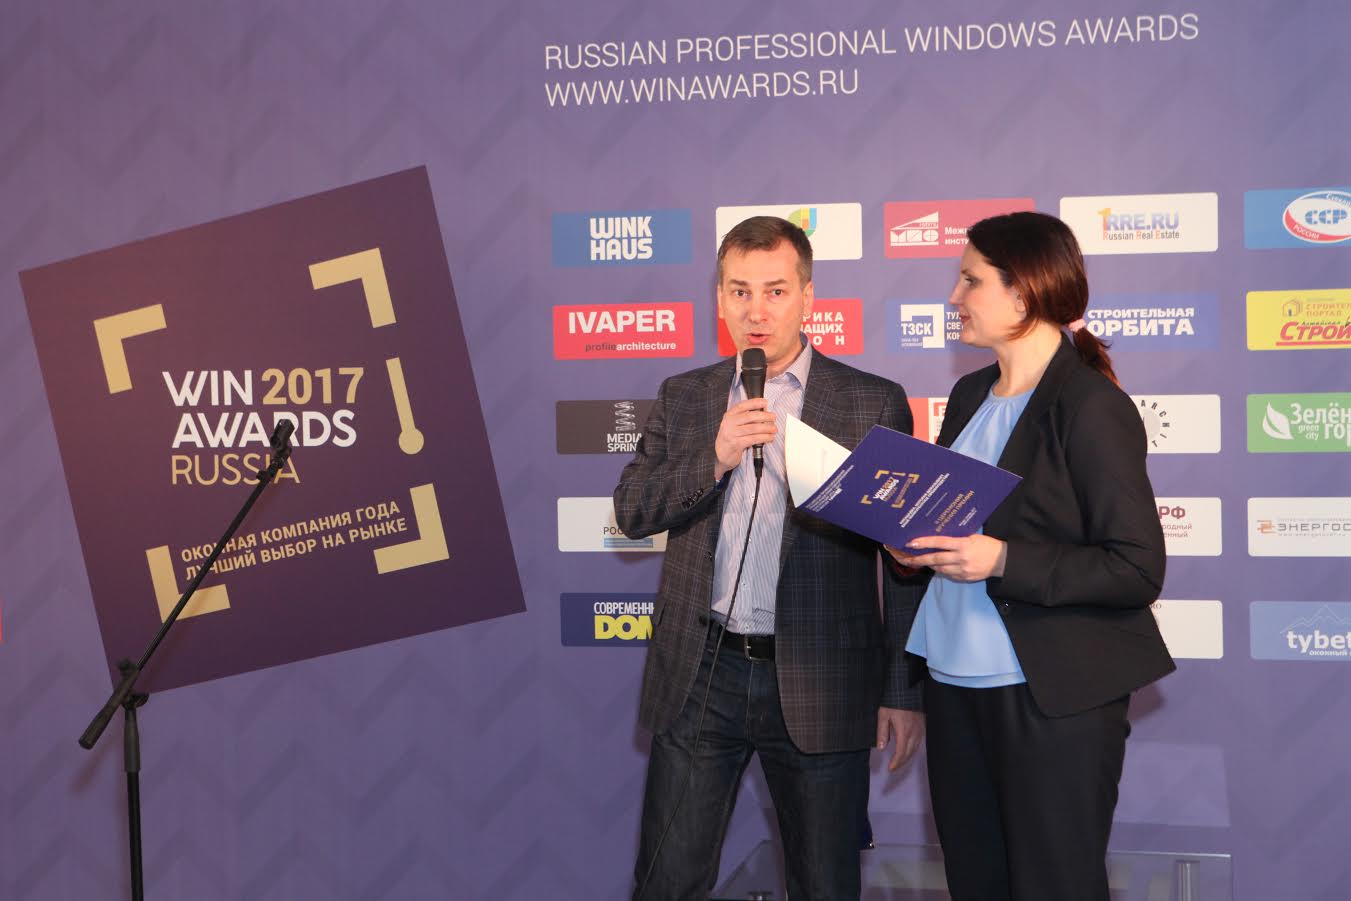 II Церемония вручения Премии «Оконная компания года»/WinAwards Russia состоится в Москве, в ноябре 2017 года